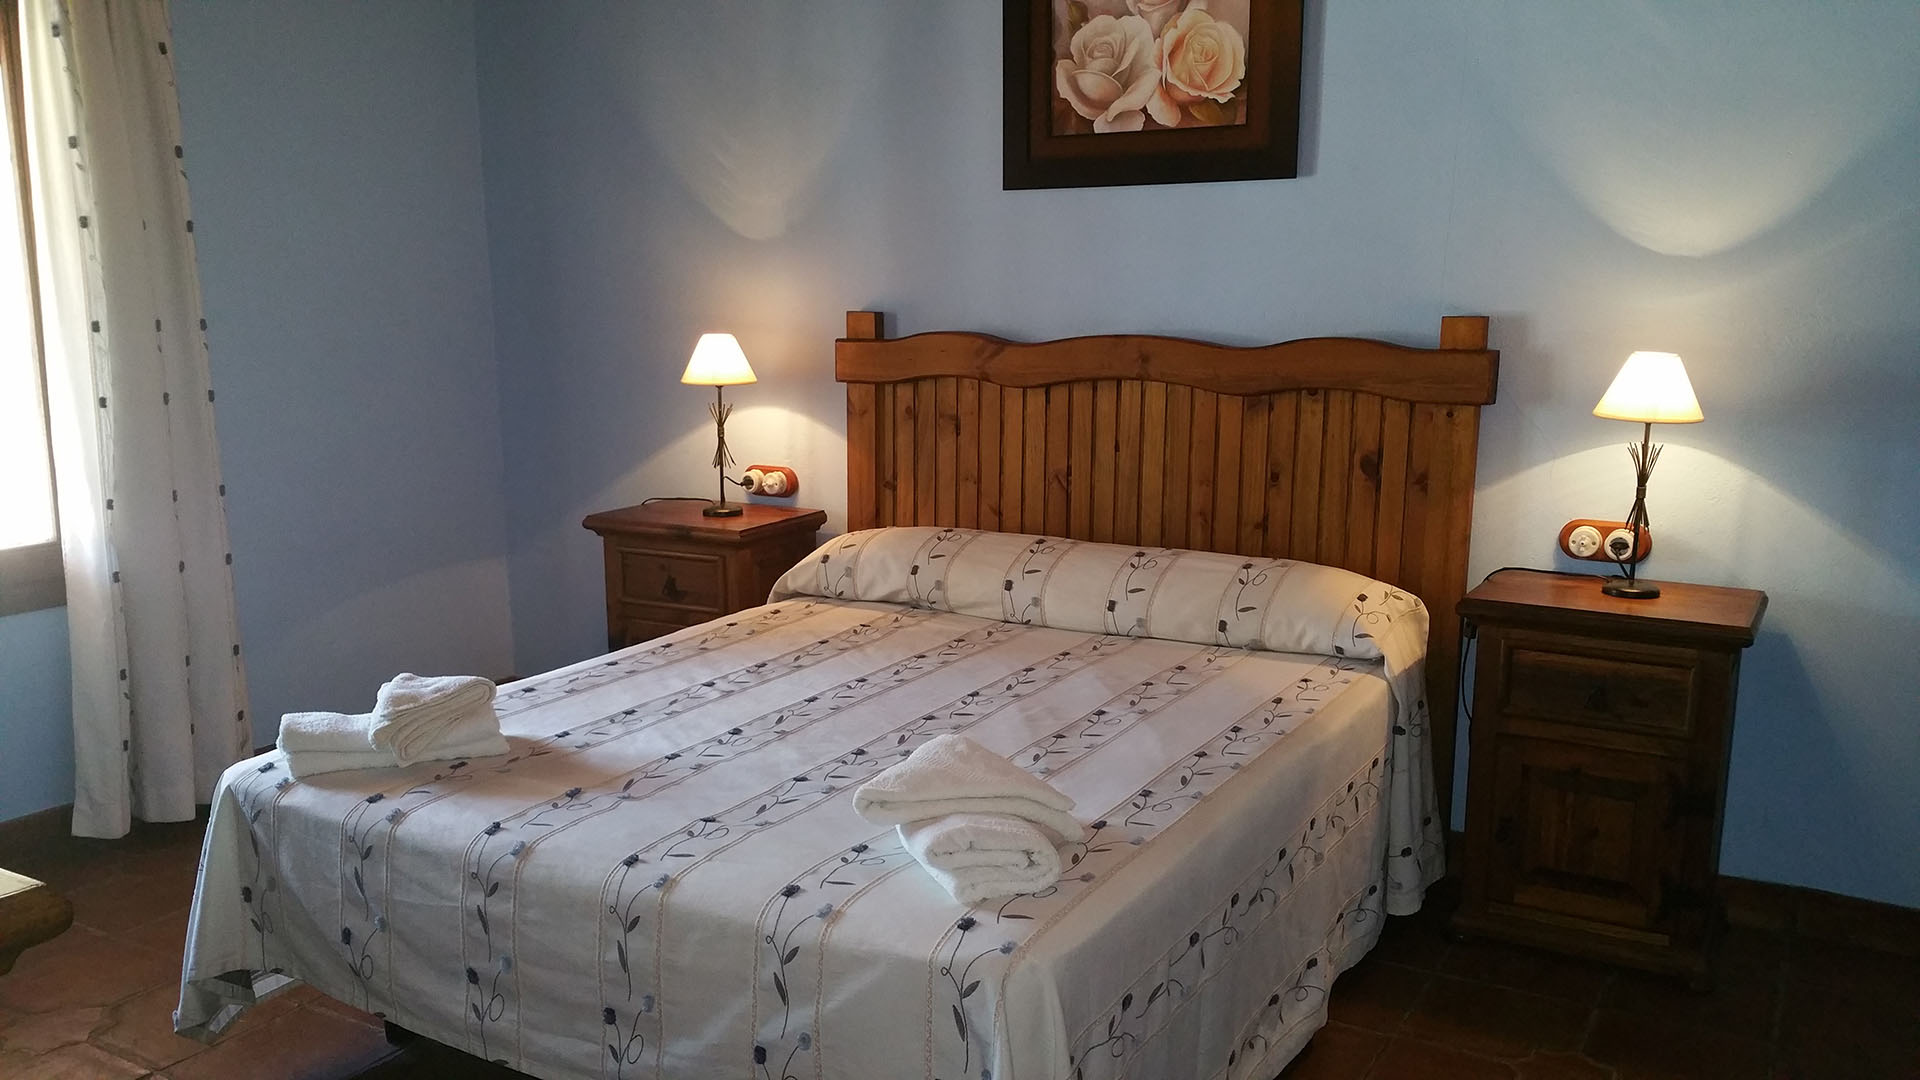 Un dormitorio con cama de matrimonio y dos mesitas de noche con lamparita. Decoración rusticas de madera.